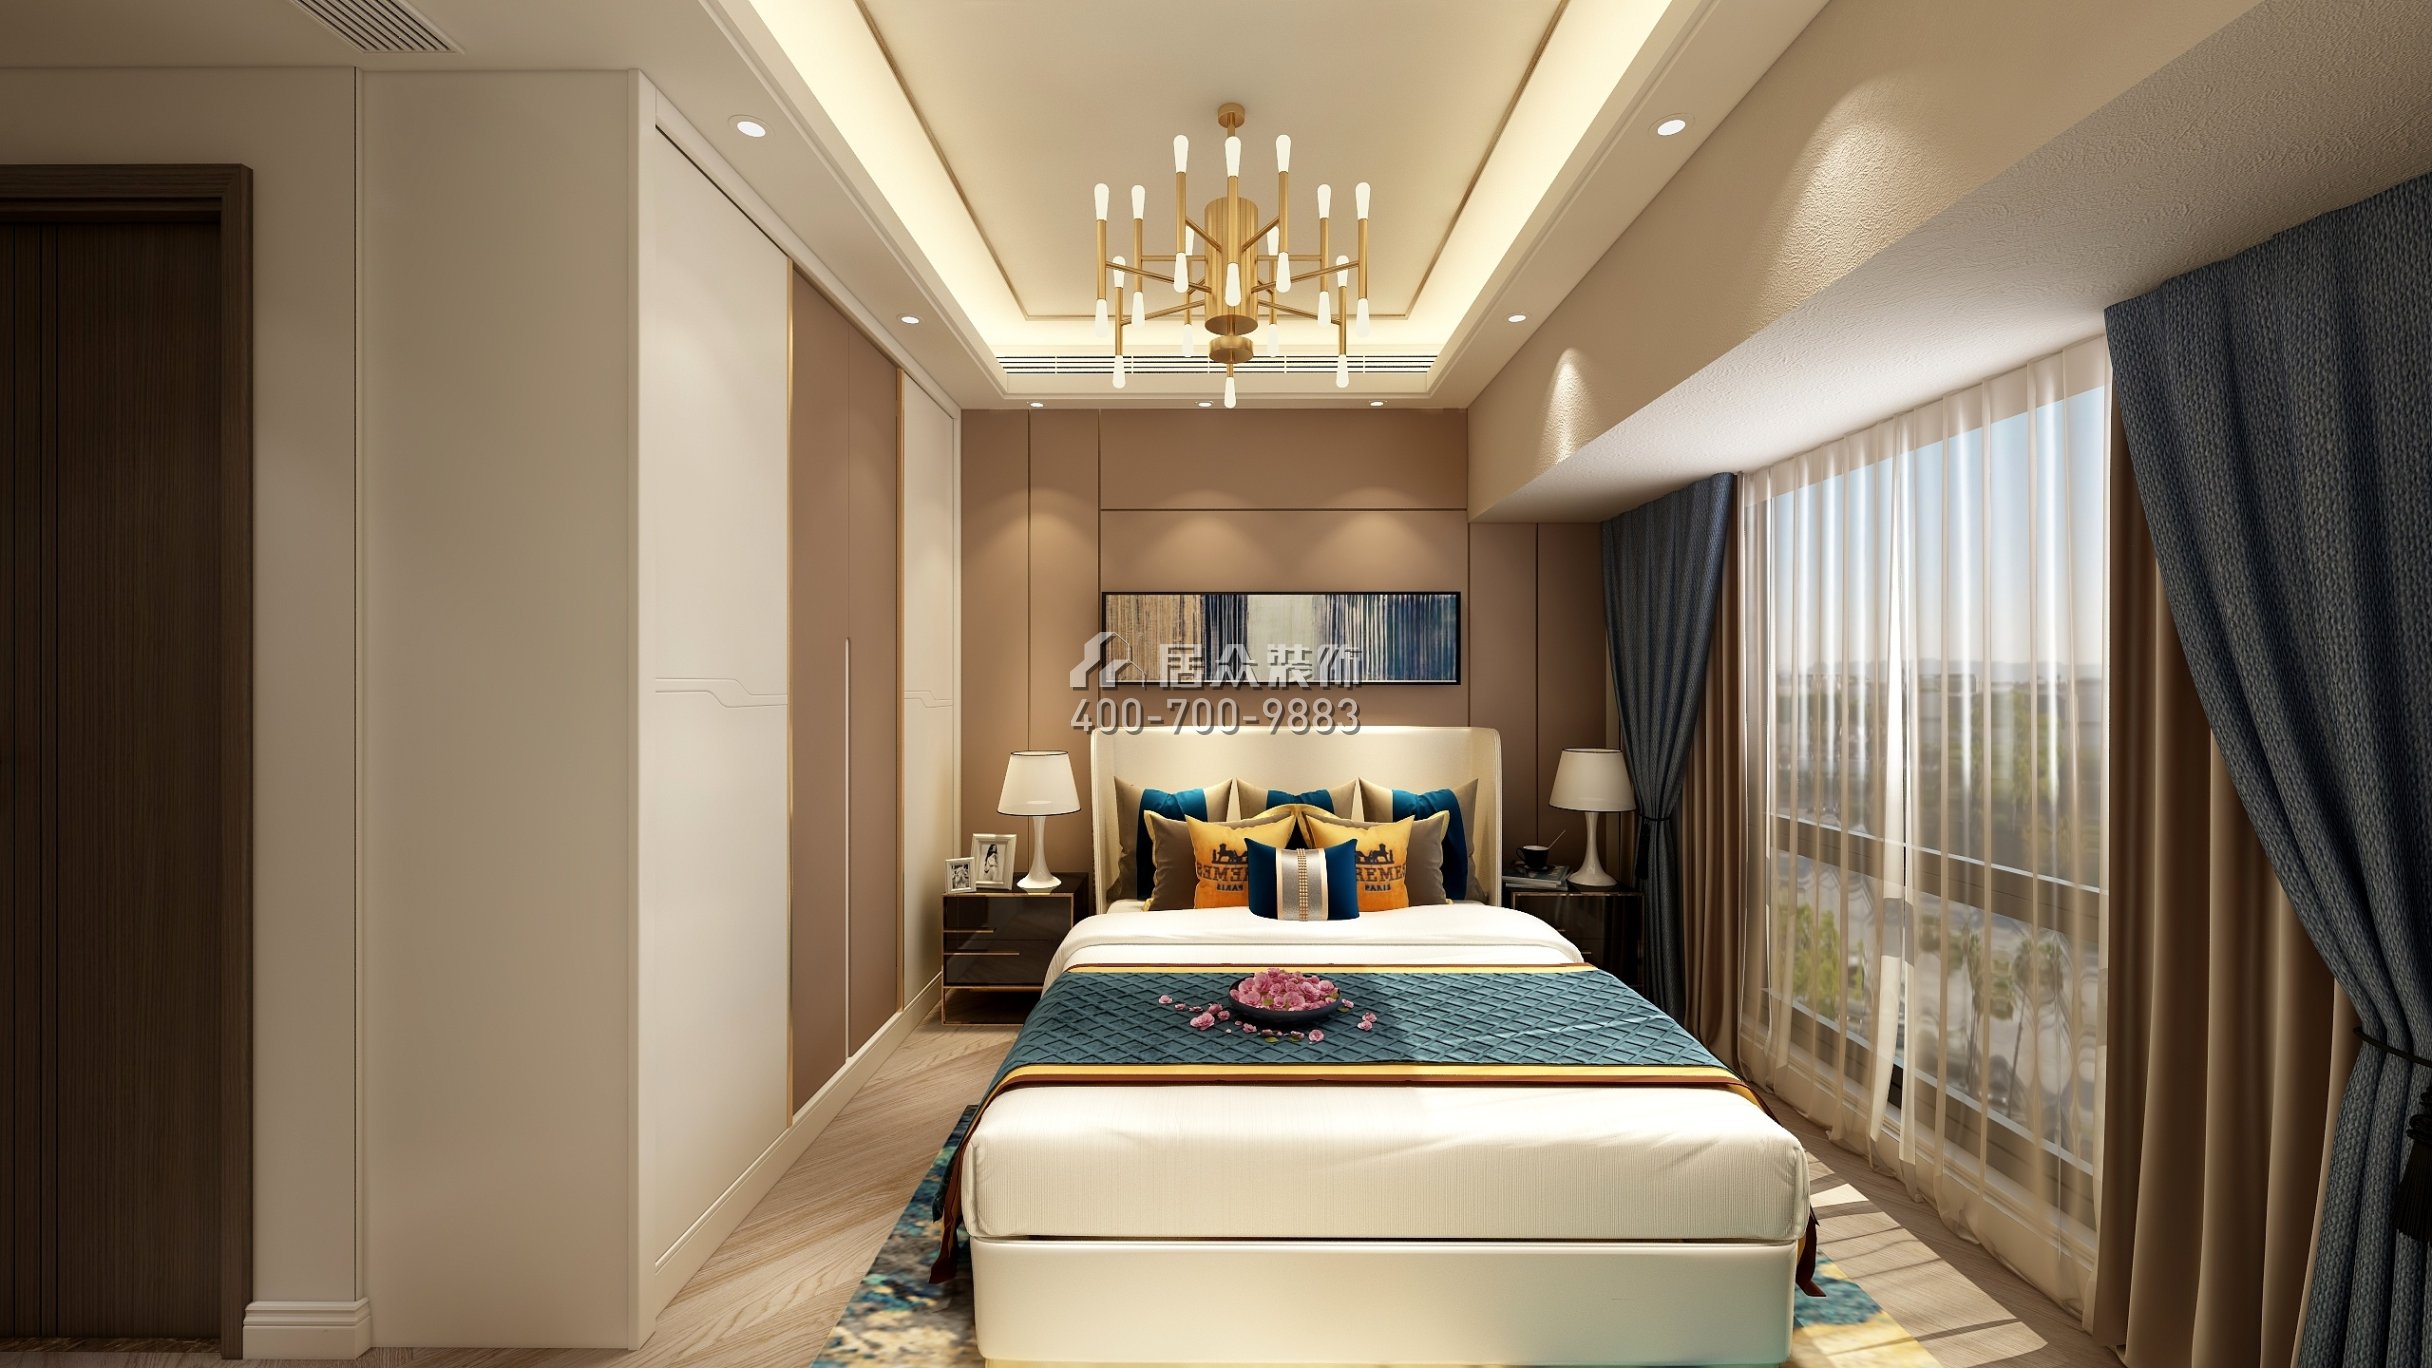 華業玫瑰四季102平方米現代簡約風格平層戶型臥室裝修效果圖